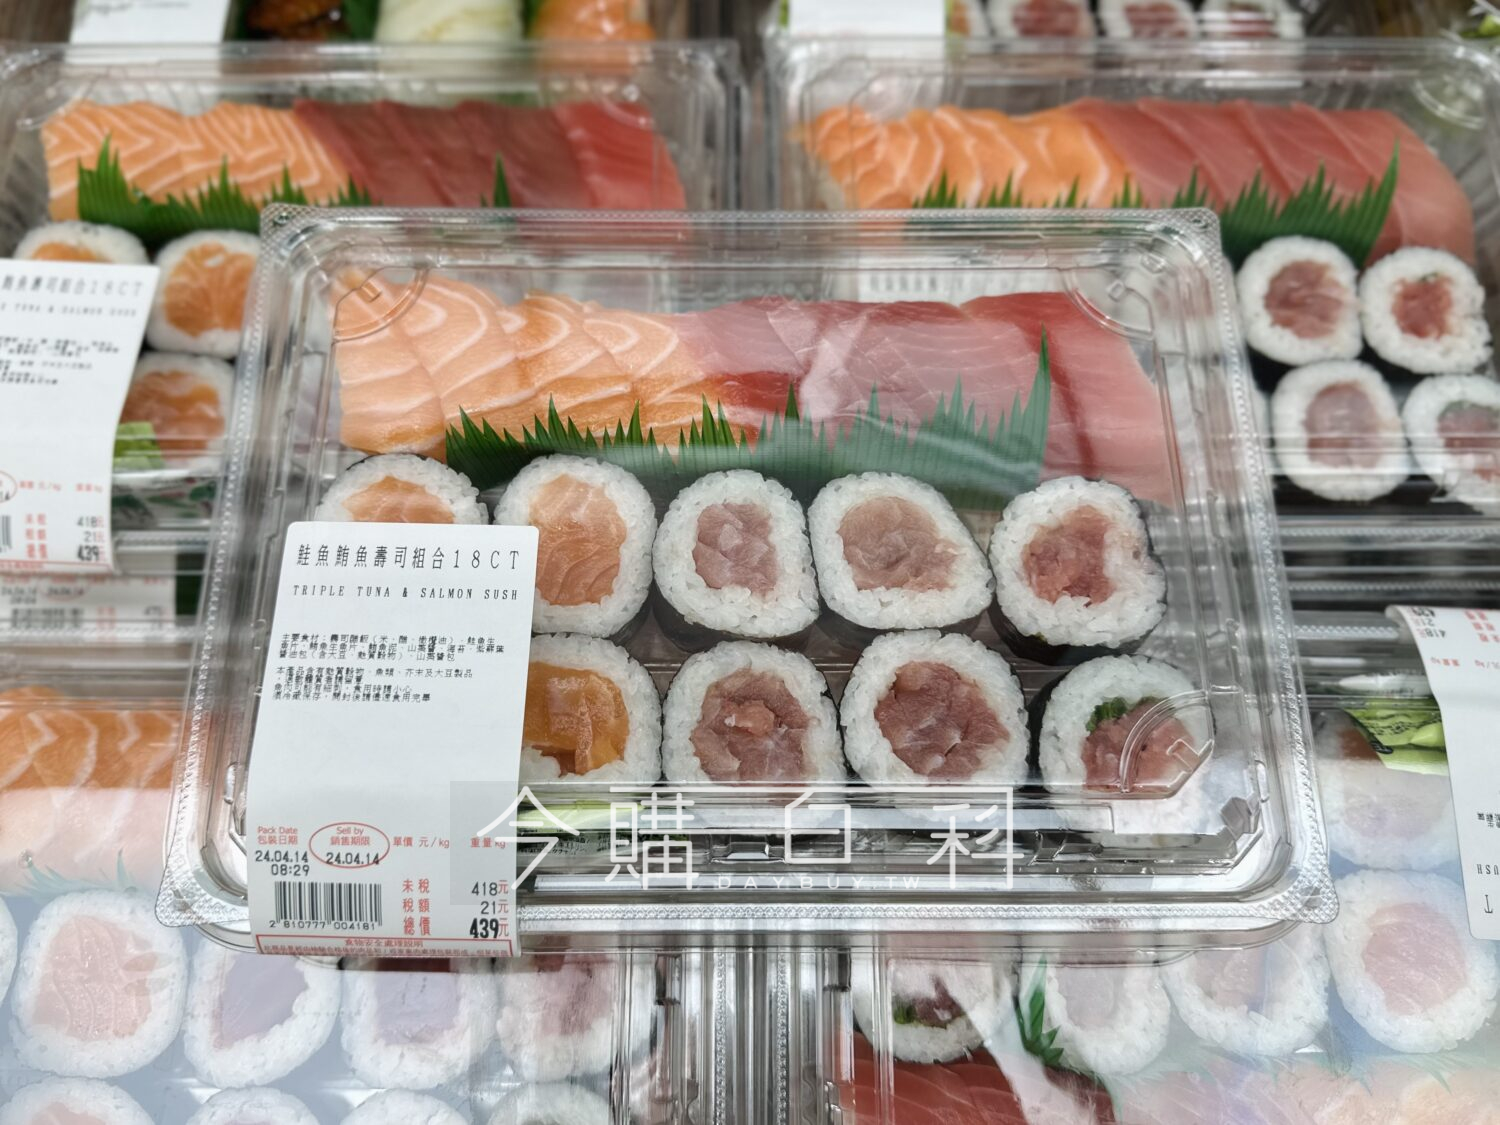 鮭魚鮪魚壽司組合18入 #810777